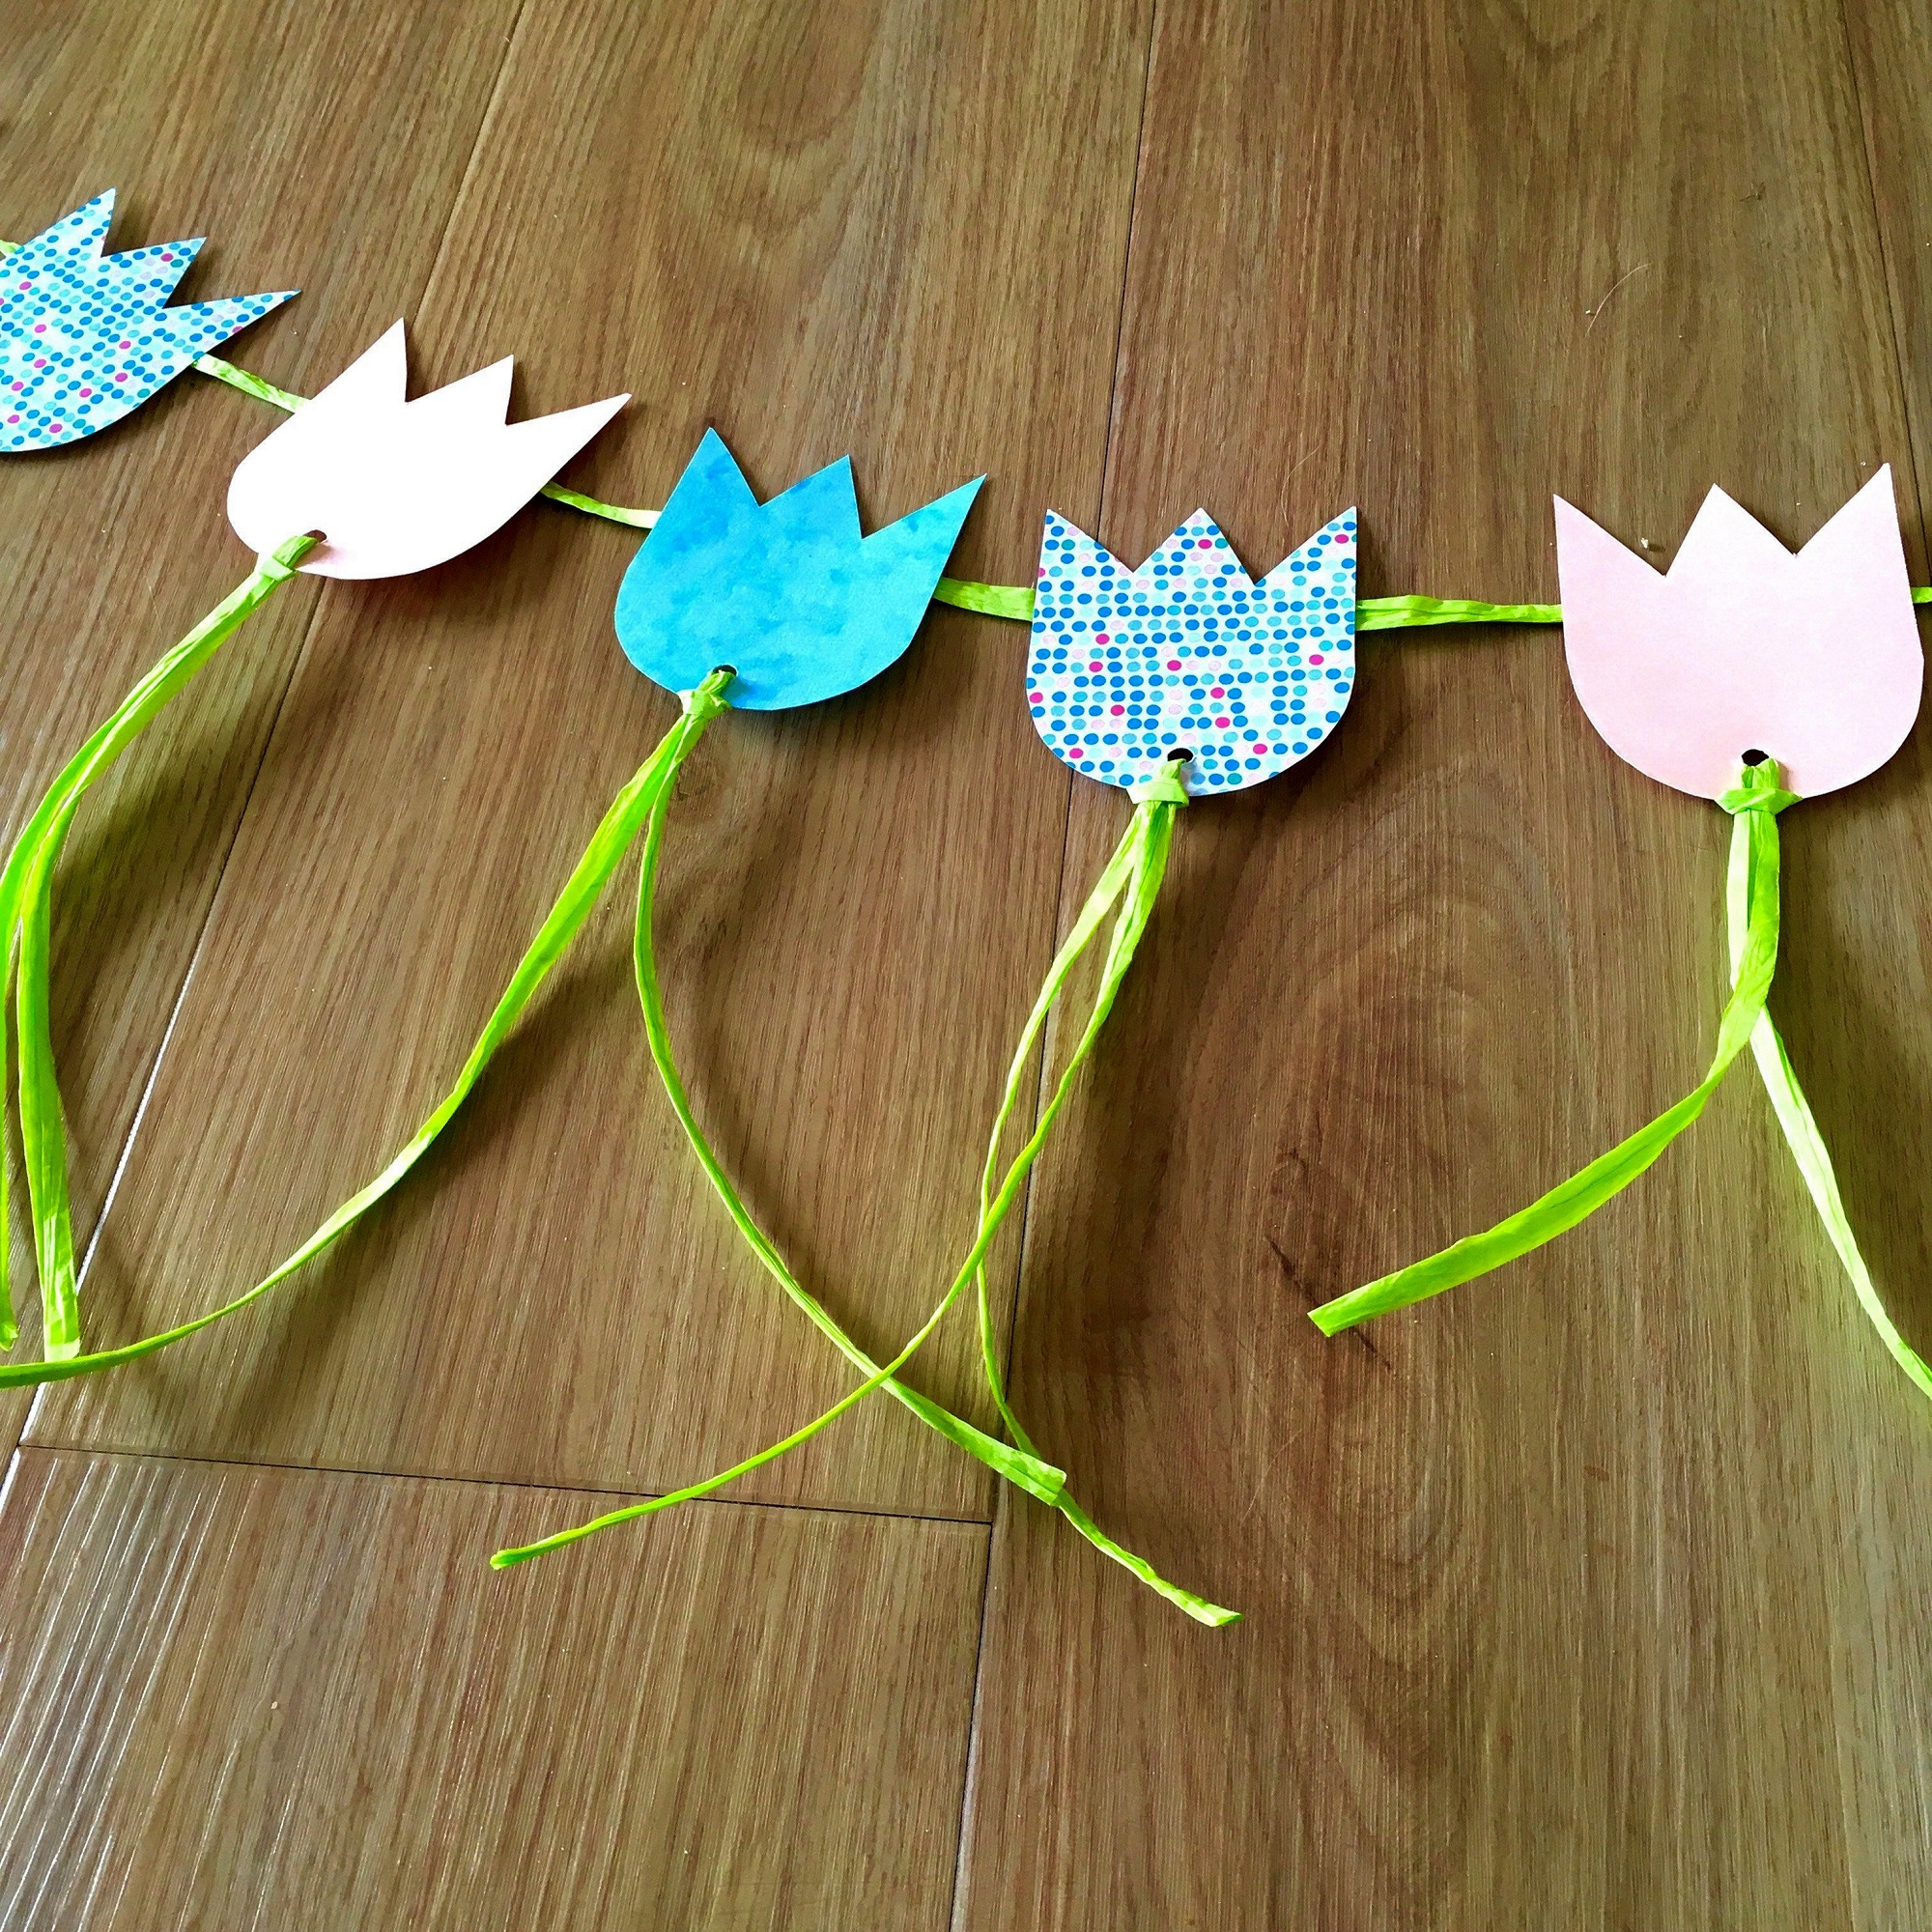 Flower Power spring decoration craft